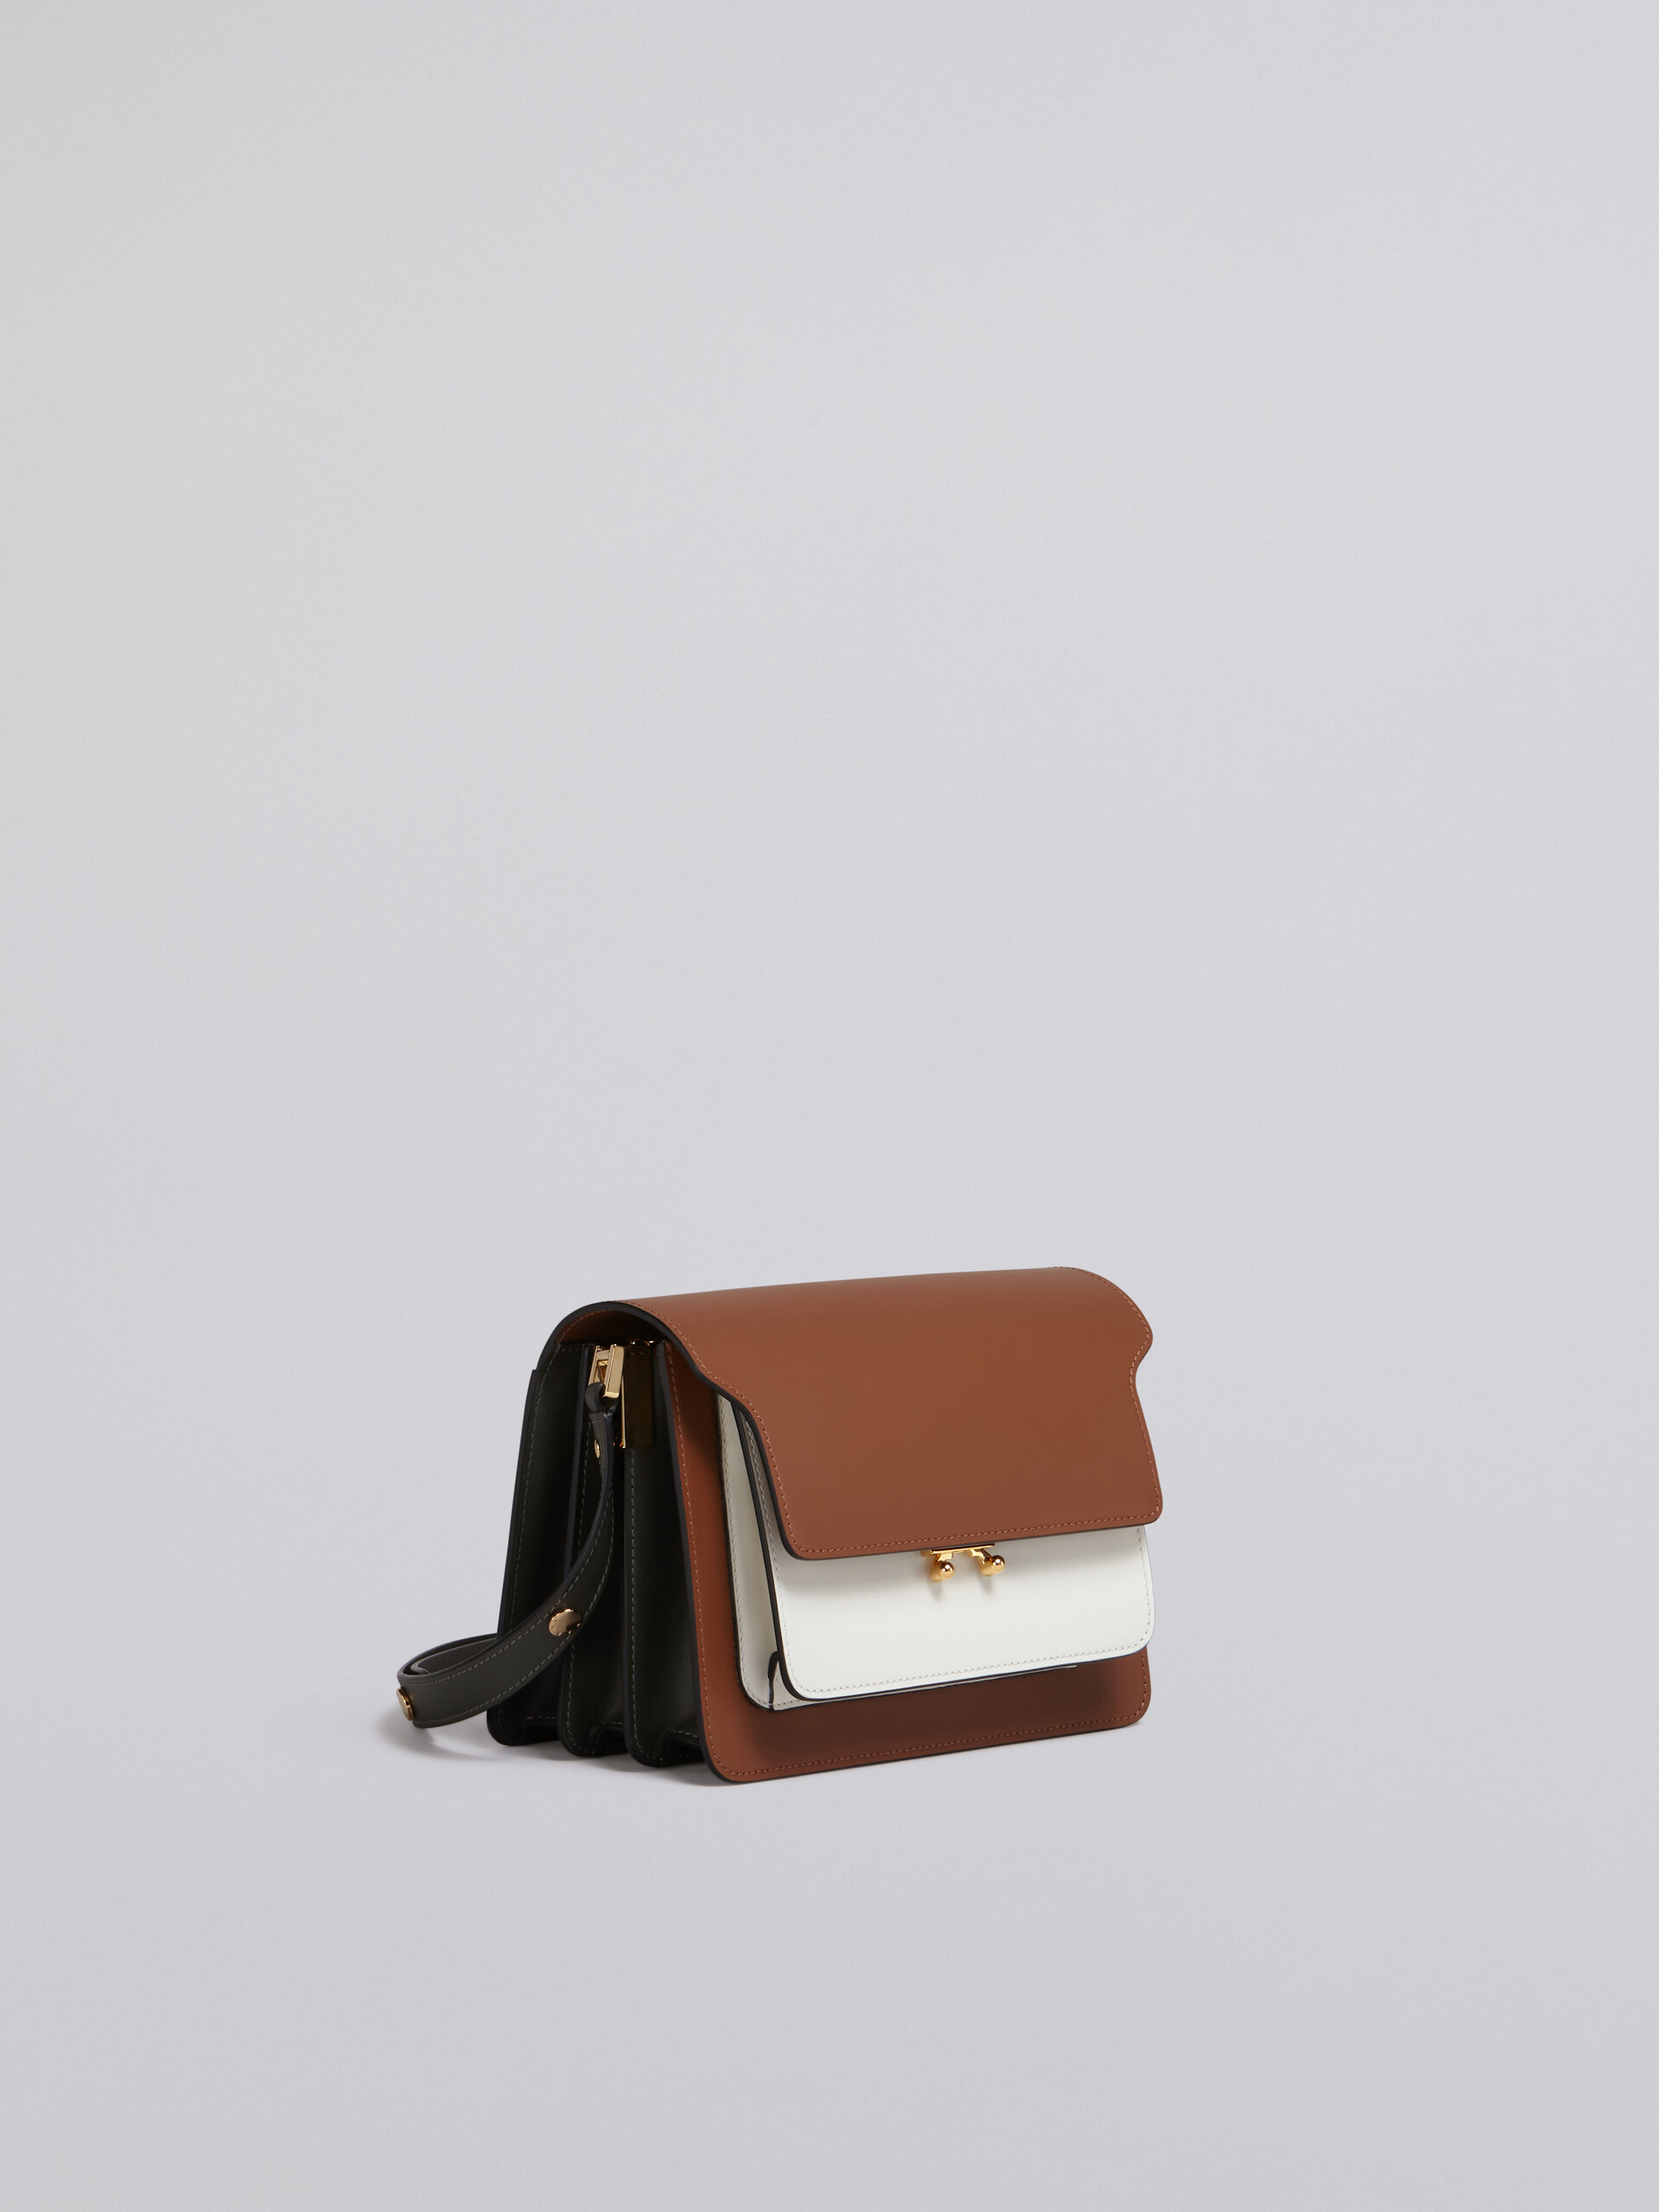 TRUNK bag in vitello tricolore - Borse a spalla - Image 5